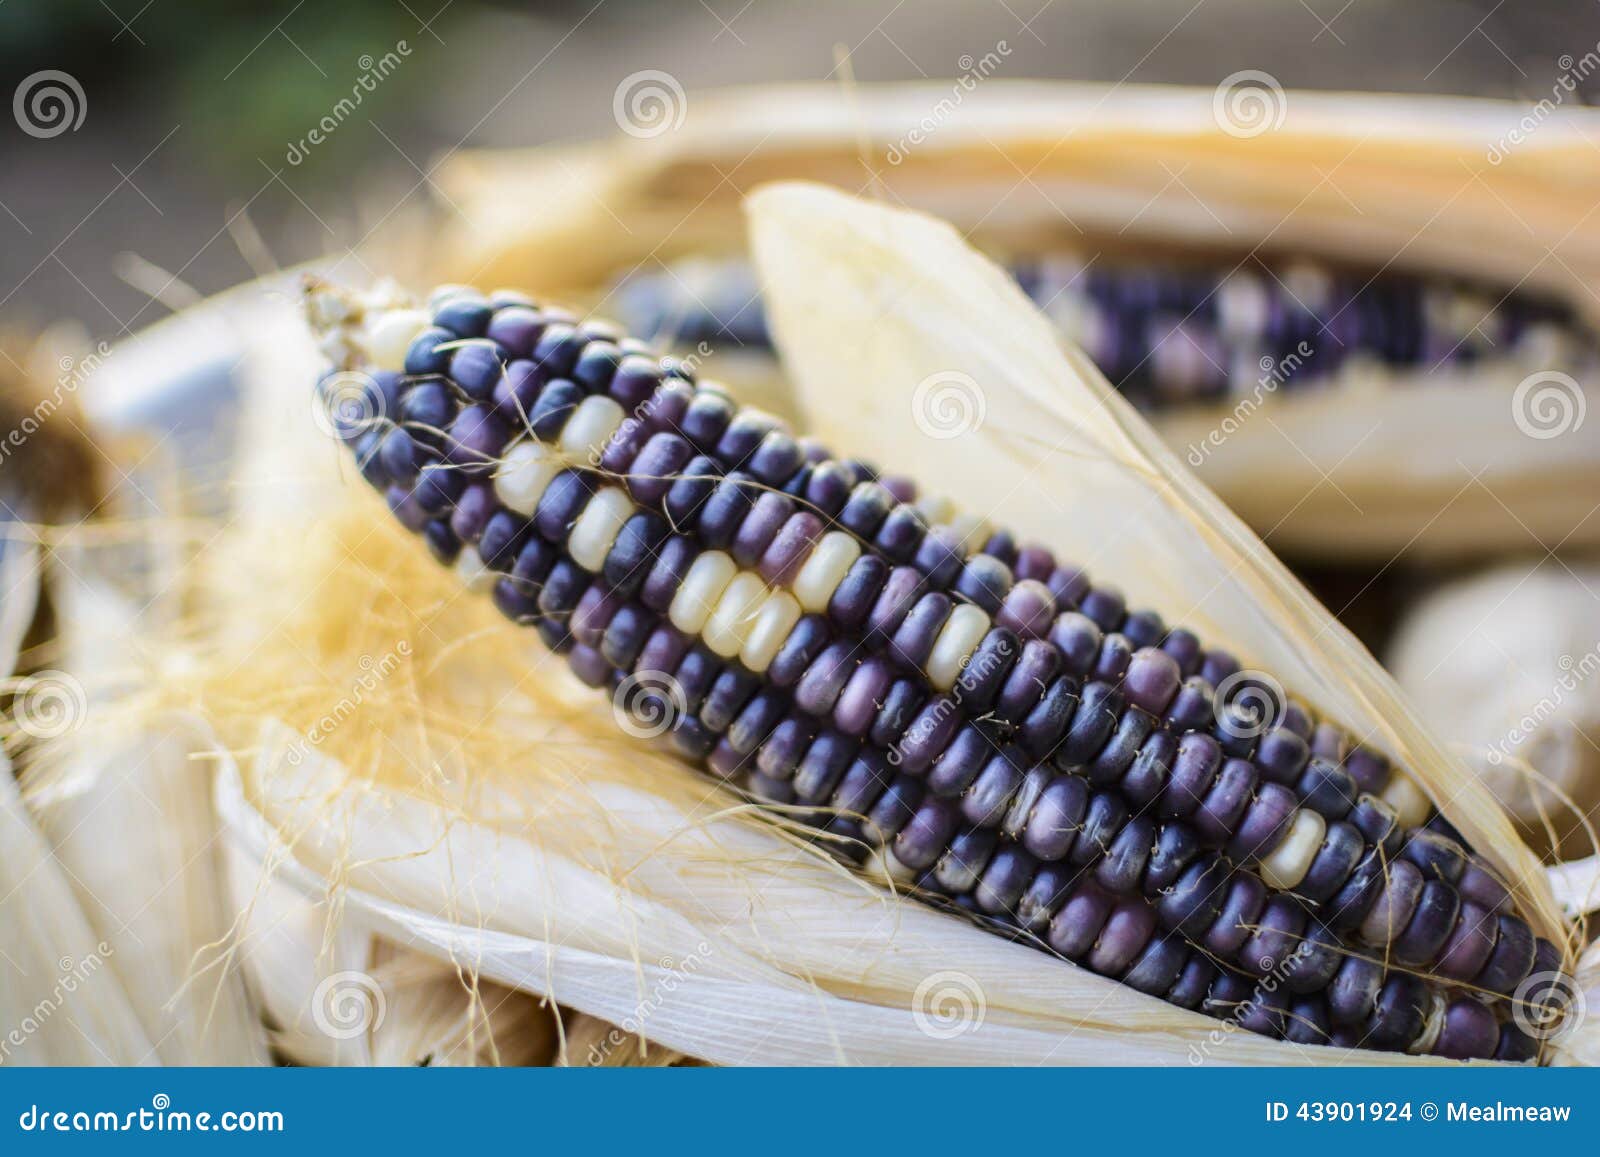 dried corn for breeding, thai corn